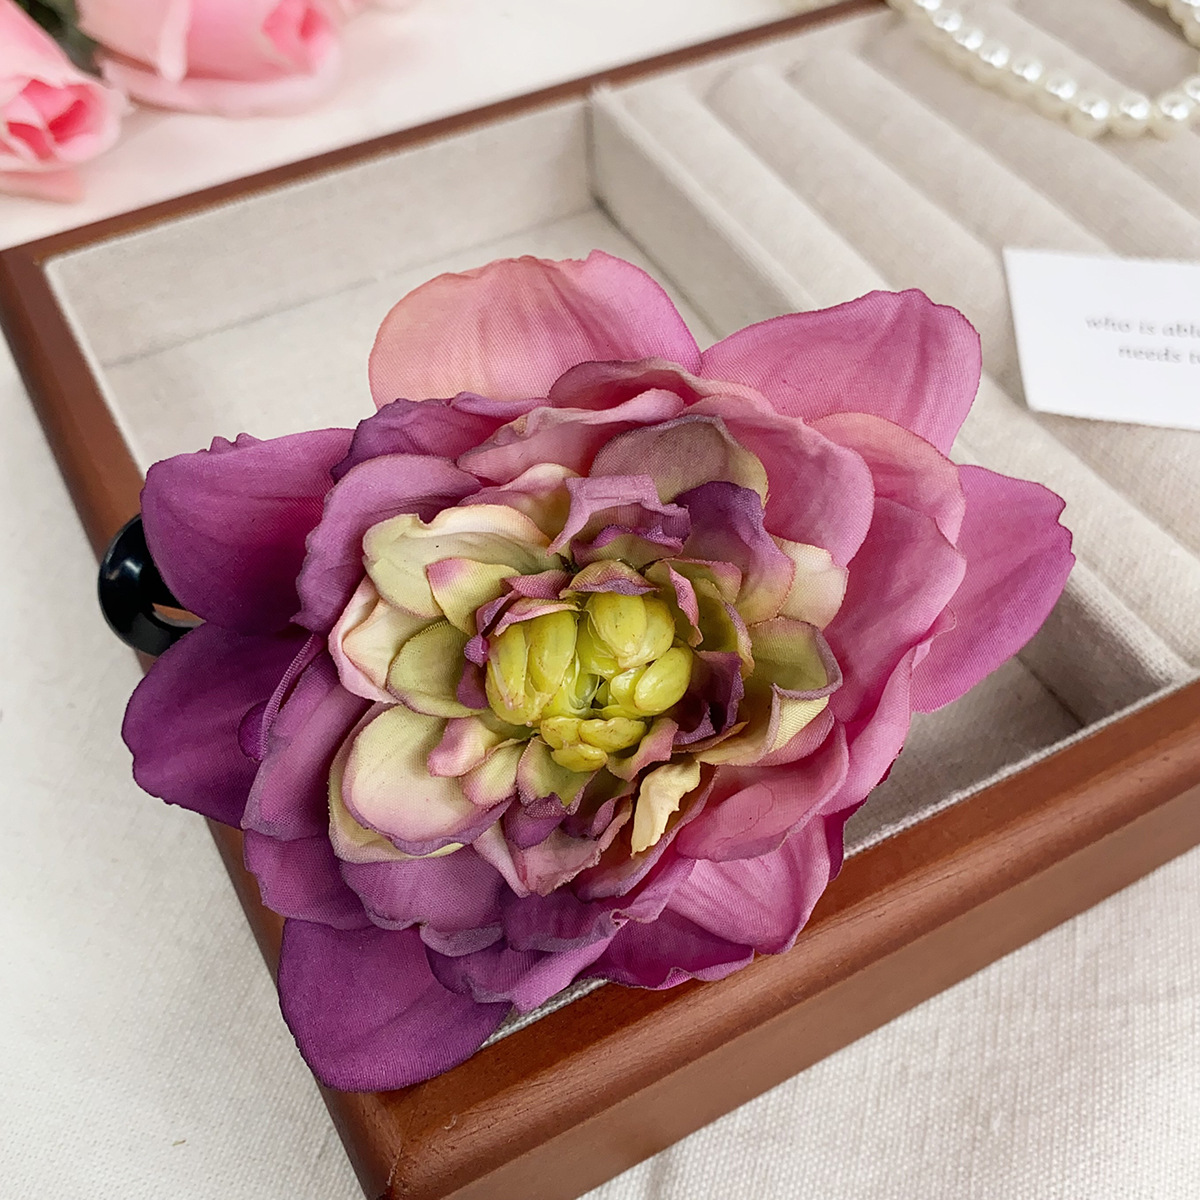 1:Purple lotus